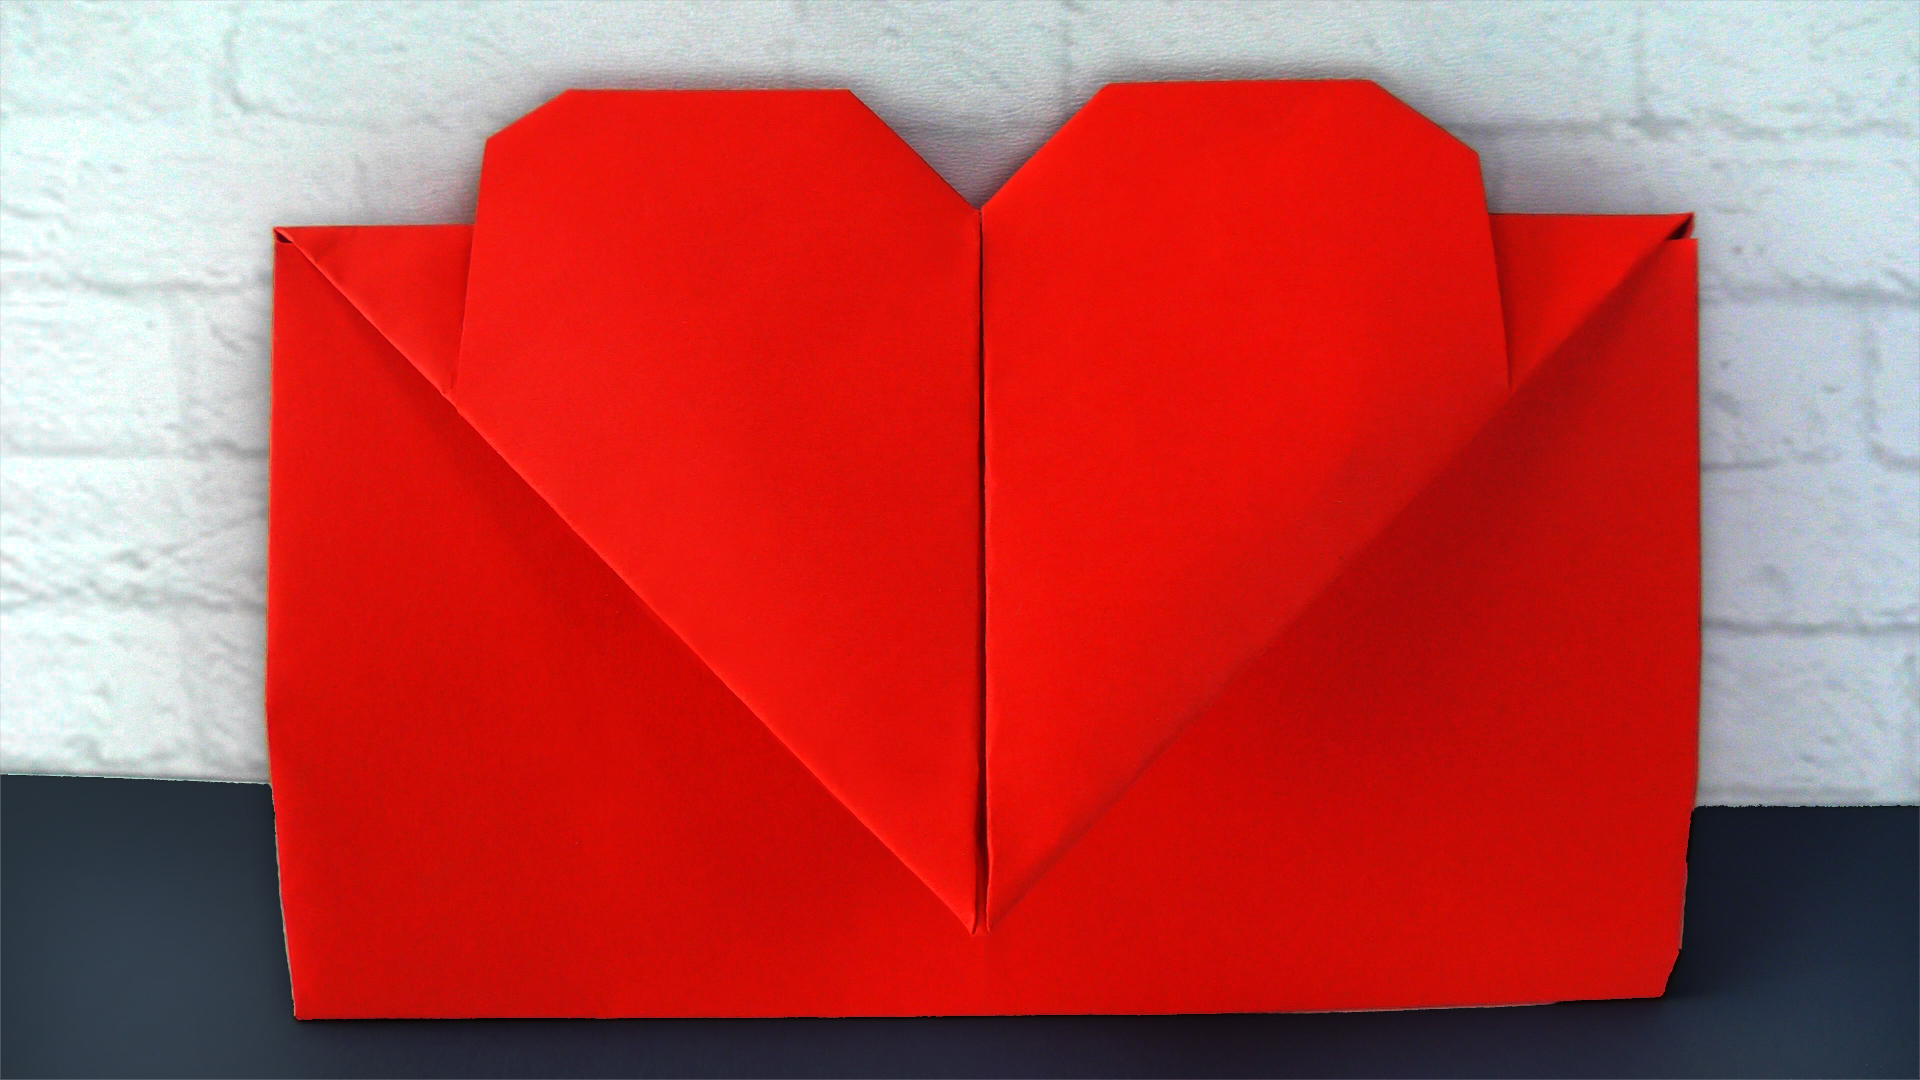 Оригами сердечко из бумаги своими руками